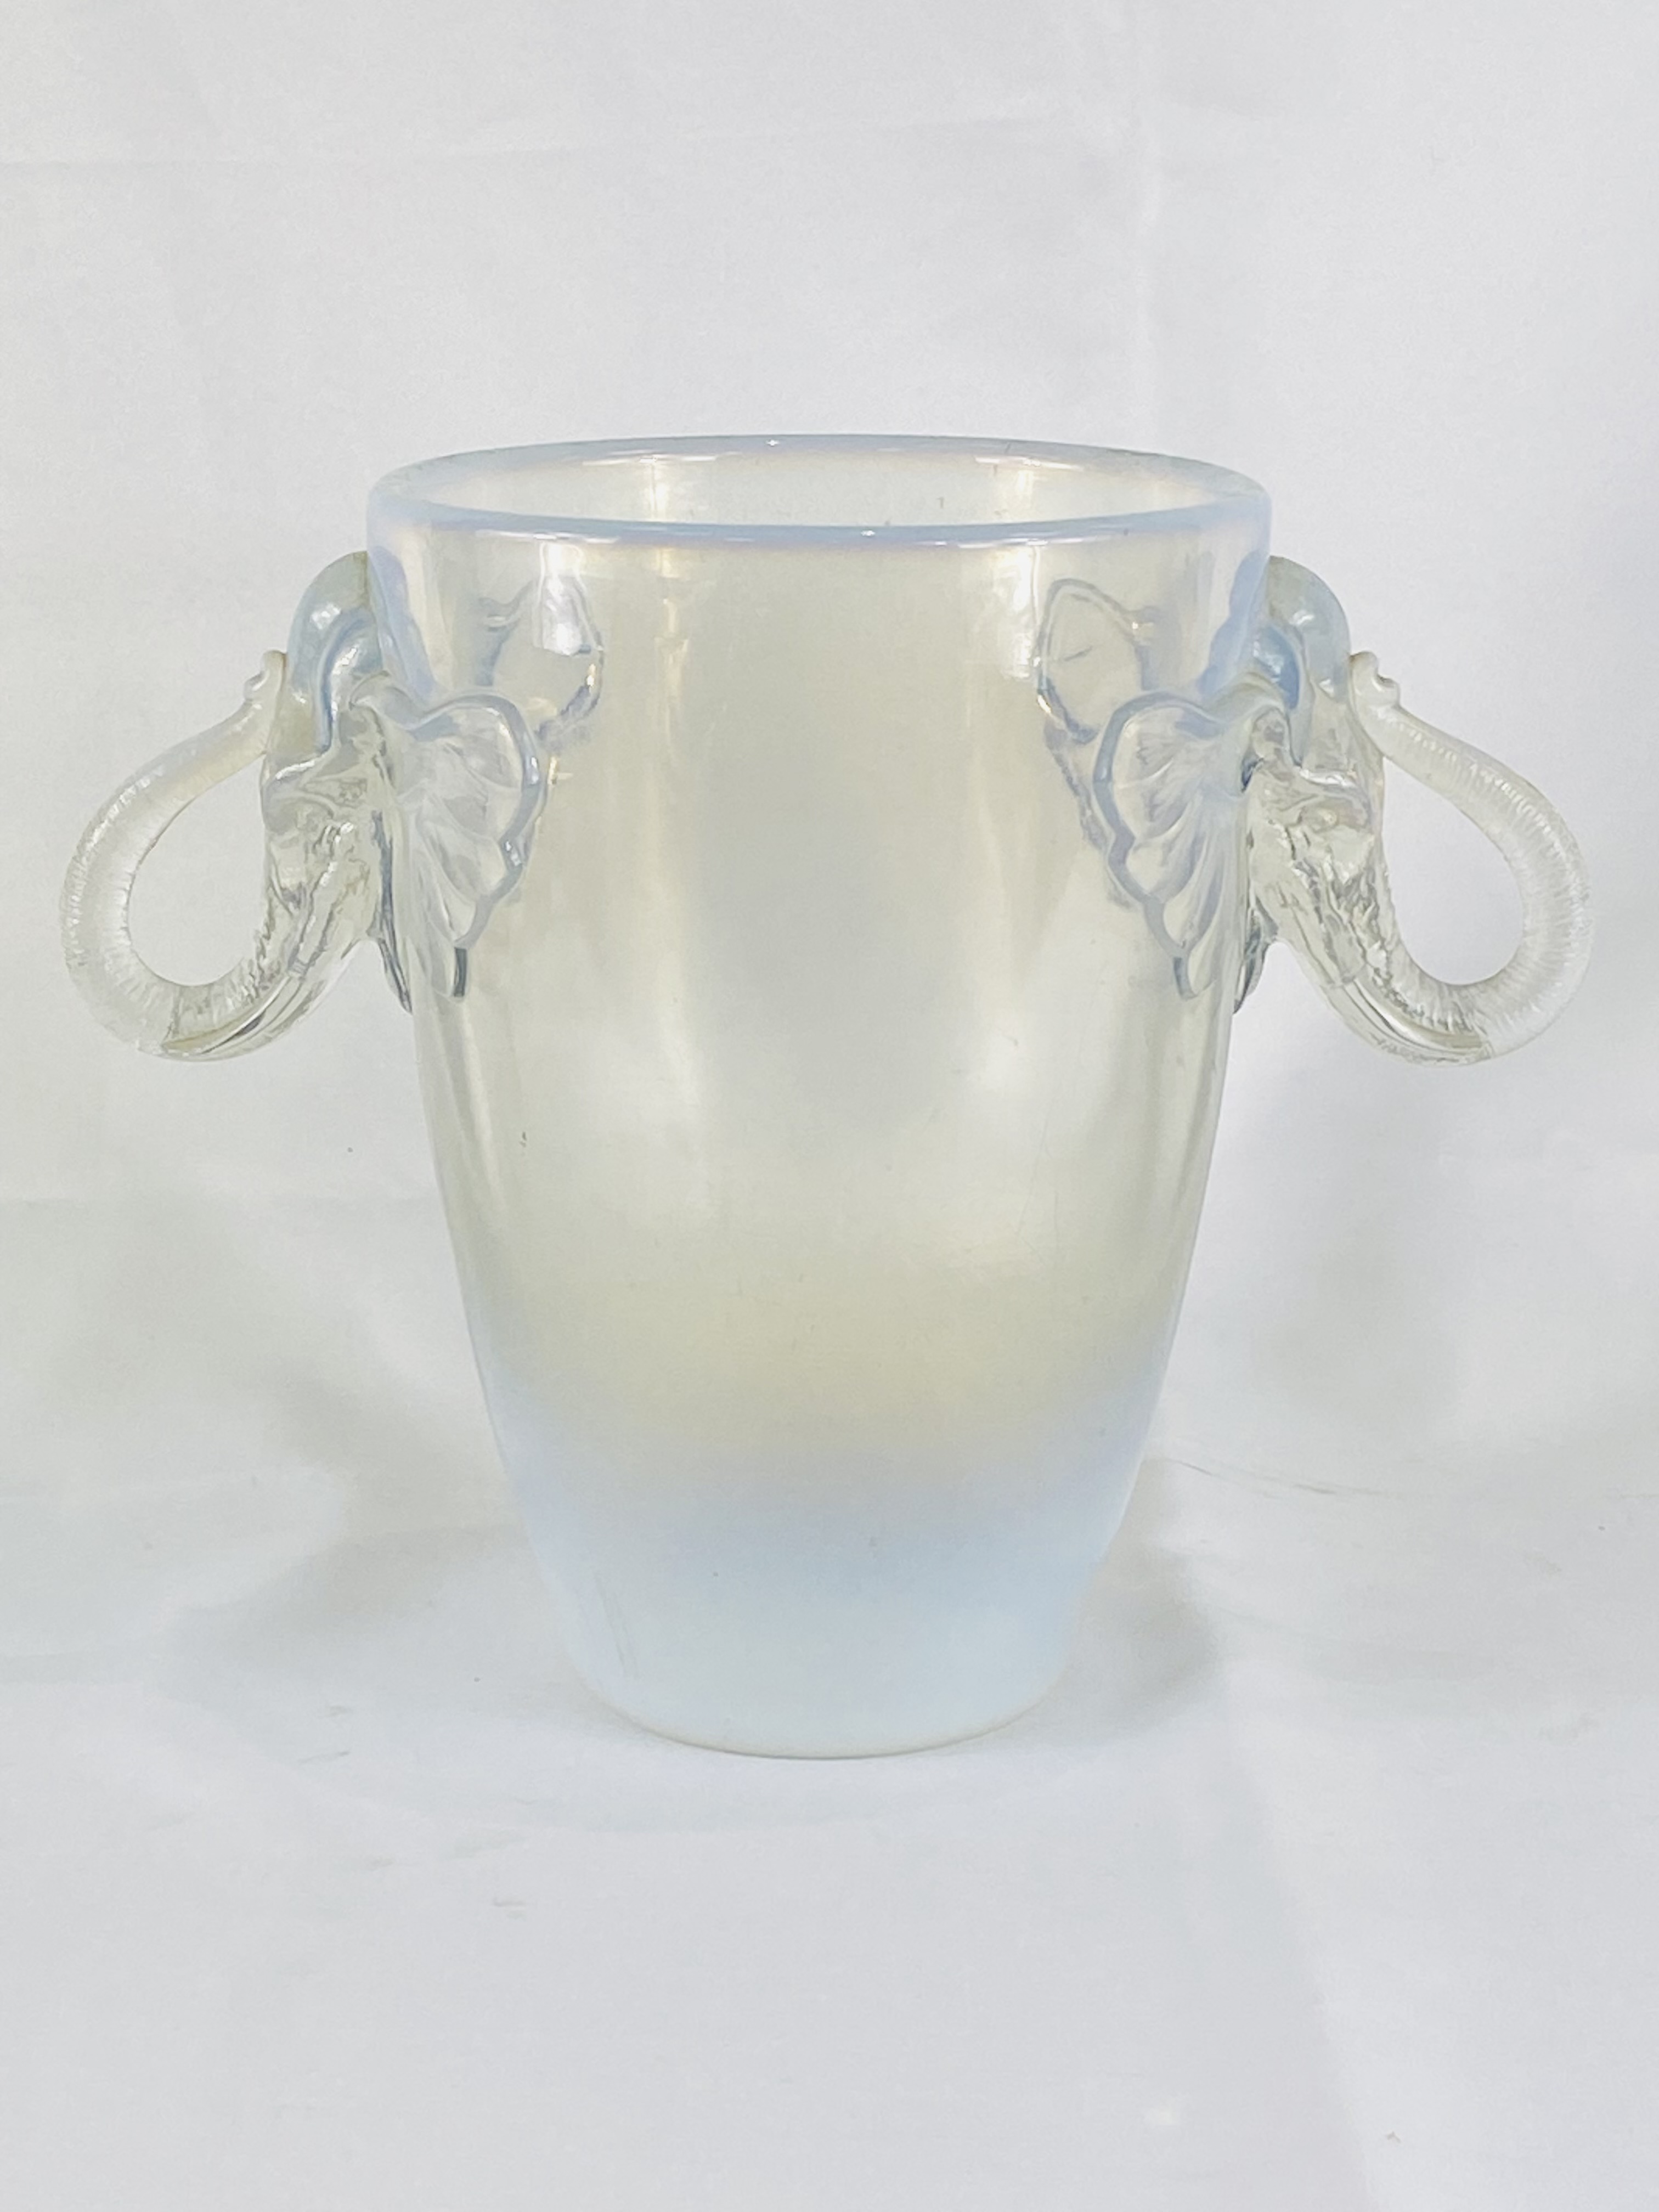 Vaseline glass vase - Image 4 of 4